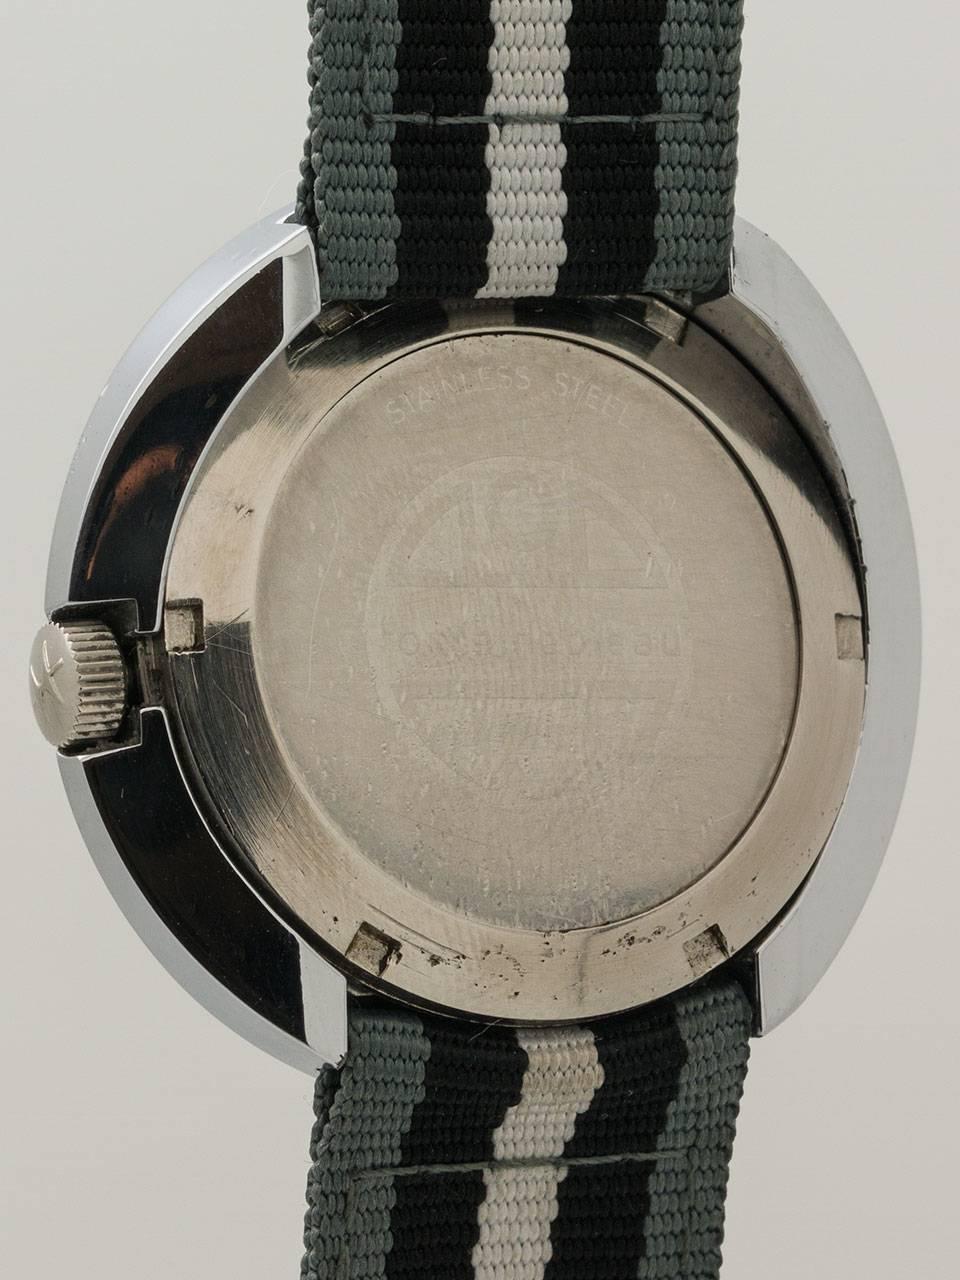 2001 a space odyssey wrist watch